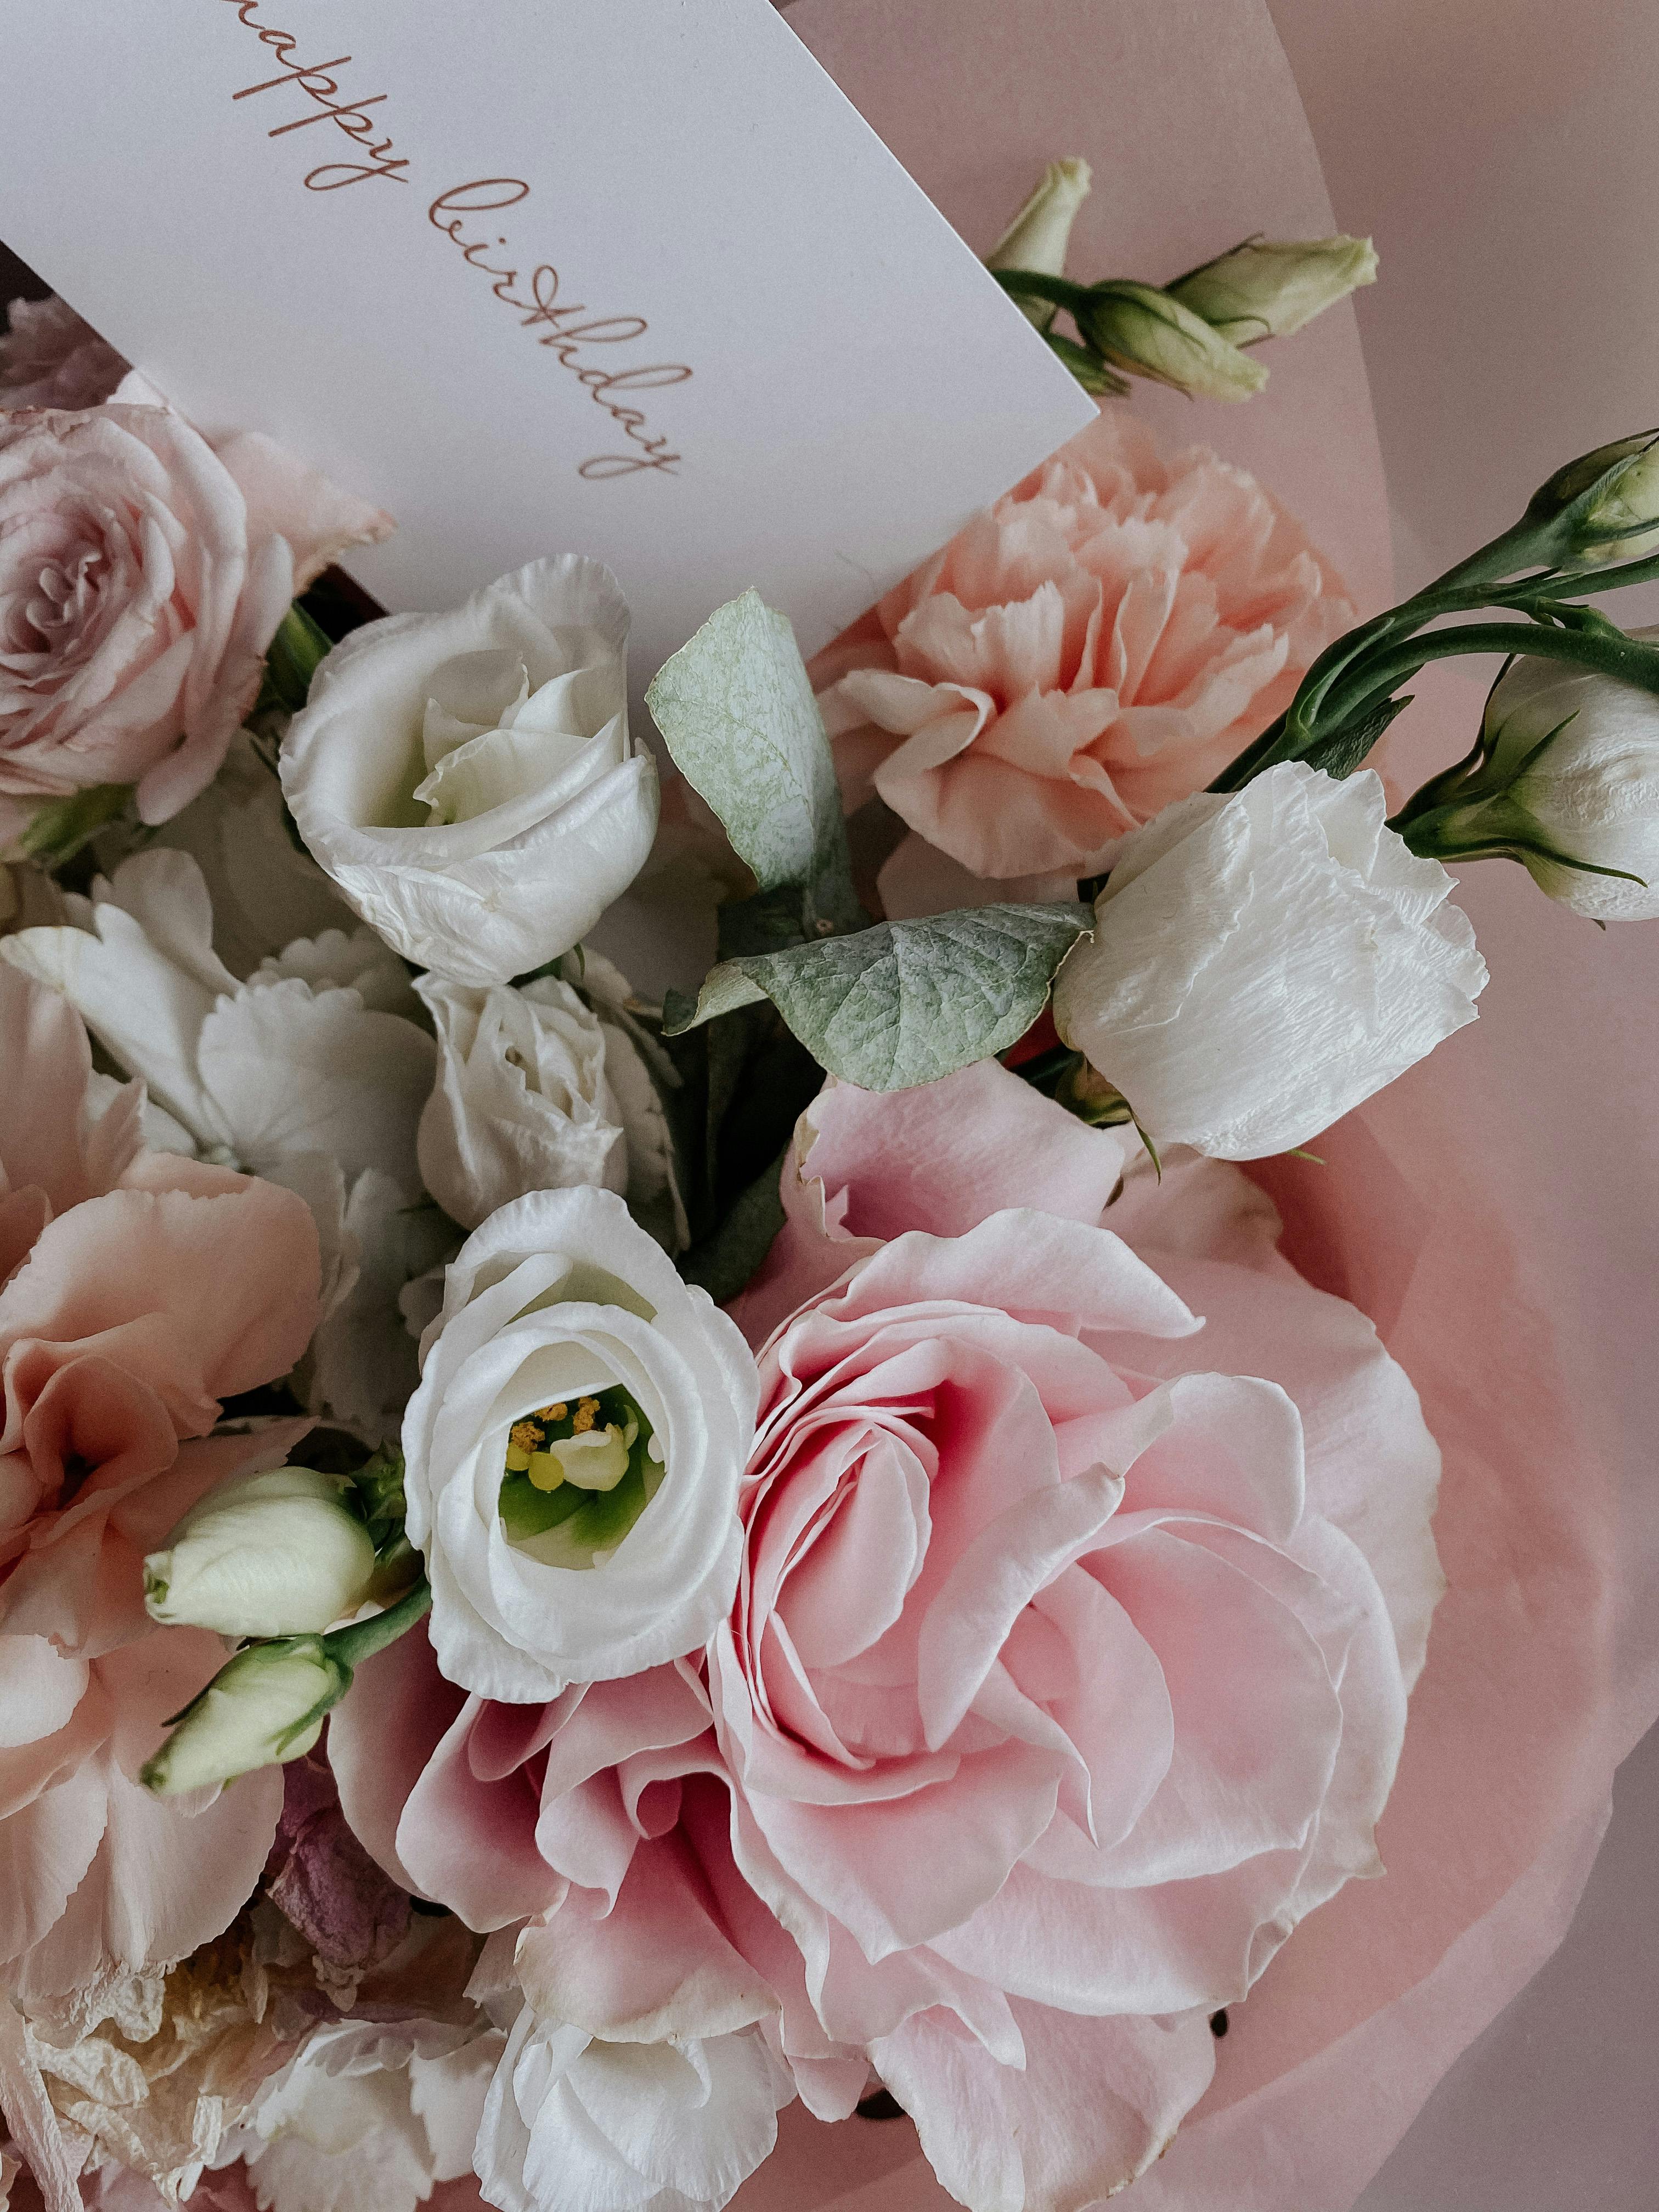 Carte De Voeux De Bon Anniversaire Sur La Fleur Rose. Fond De